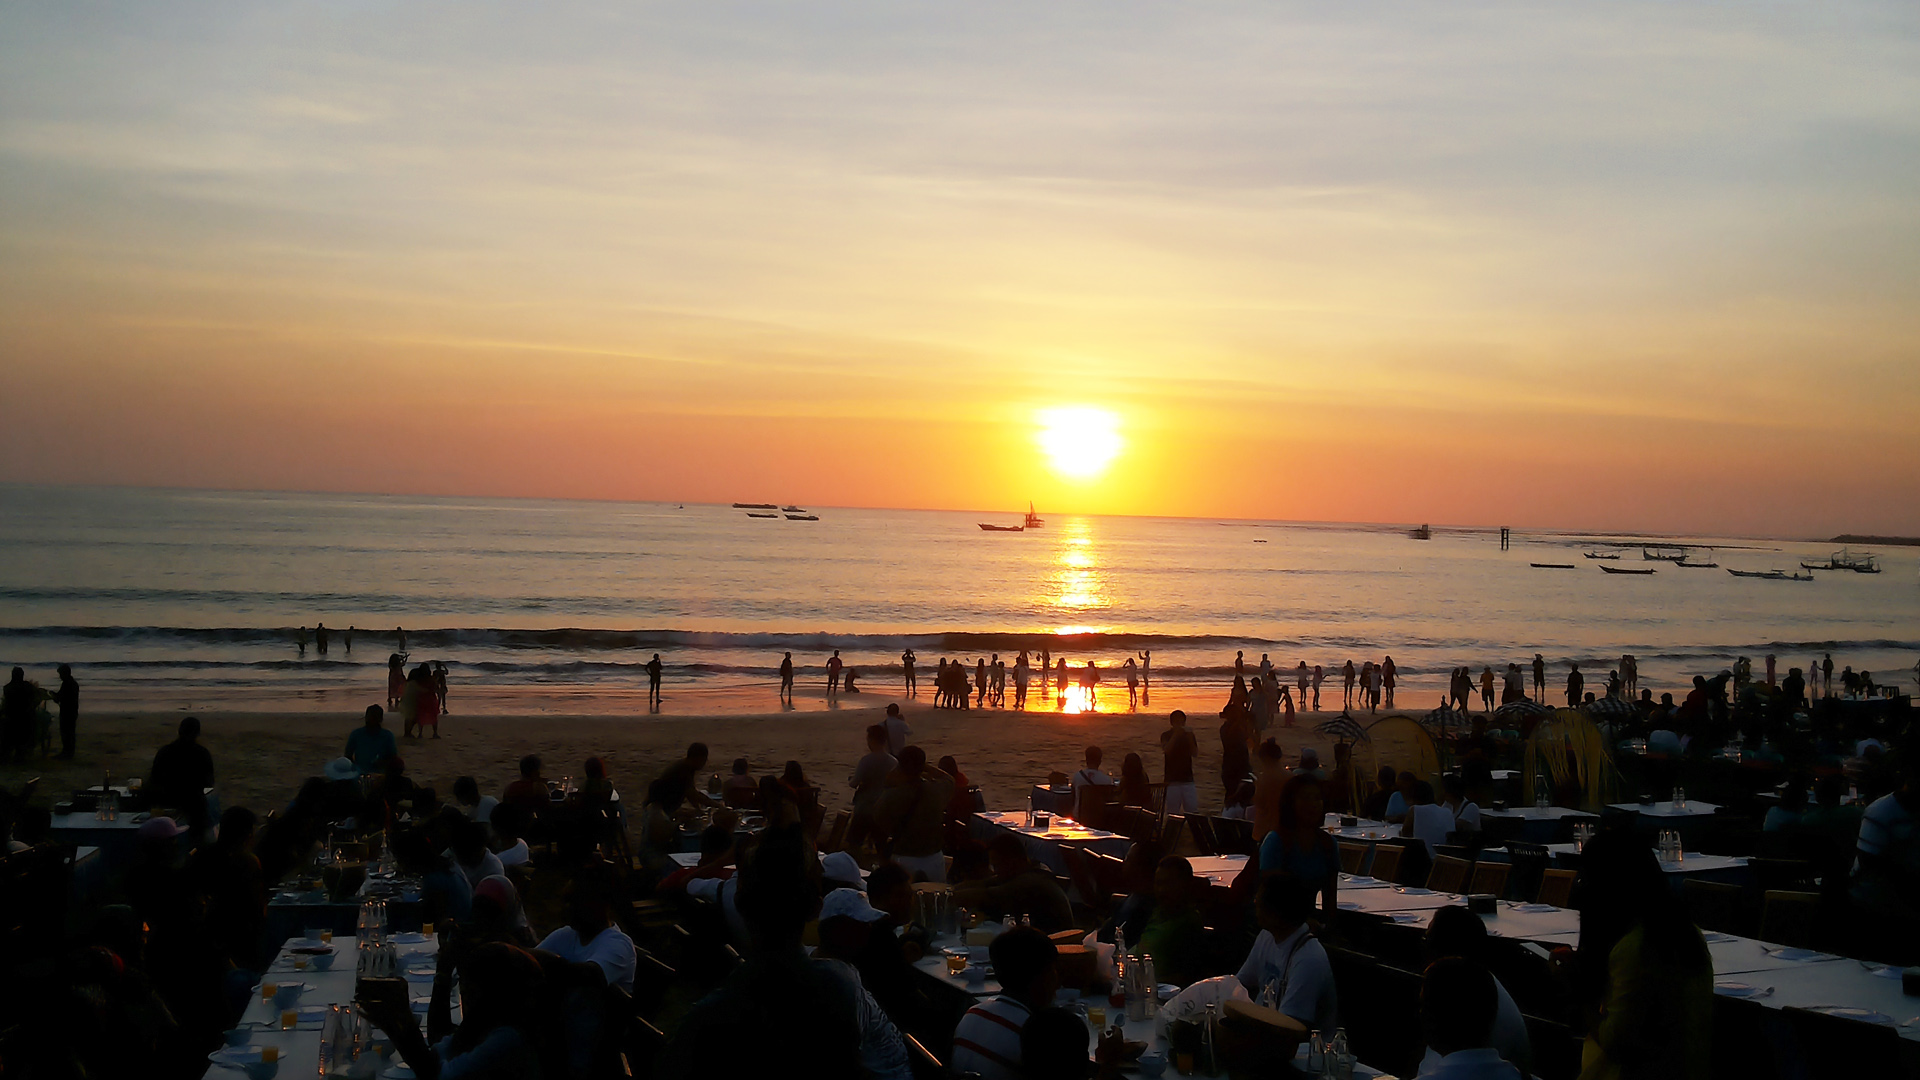 峇里島沙灘晚餐】金巴蘭海灘夕陽美景海鮮BBQ晚餐體驗- KKday